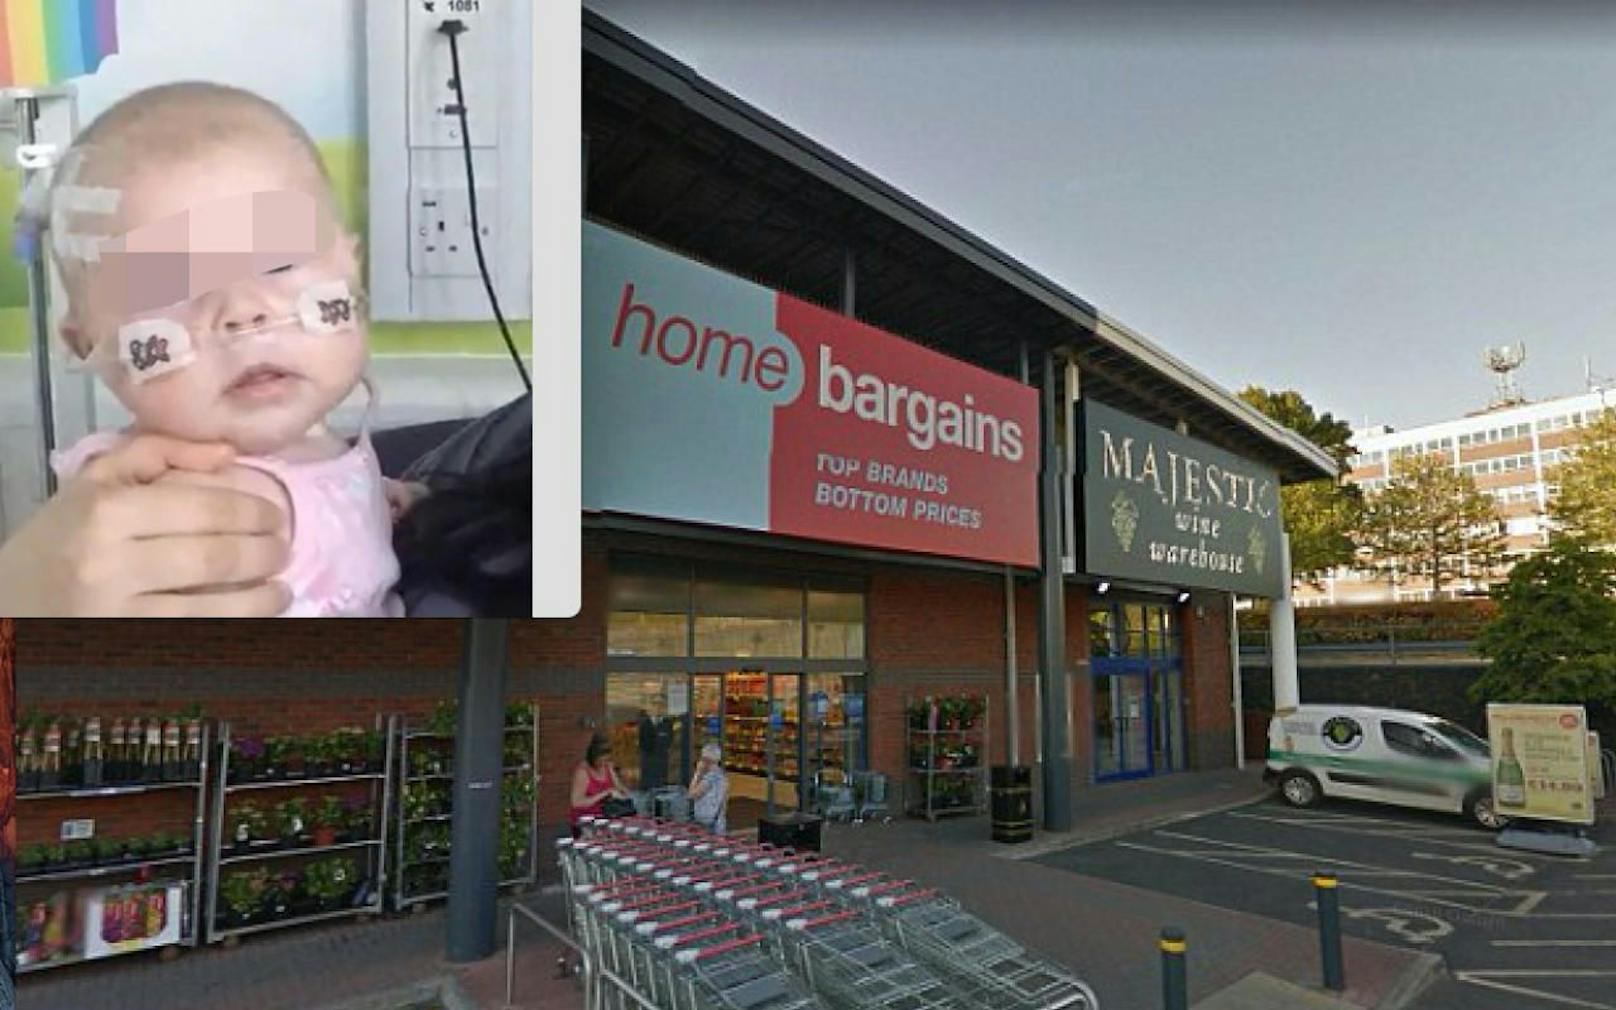 Ein Bub (3) war in einem Supermarkt in Worcester (GB) mit Säure übergossen worden. Sein eigener Vater soll die drei Täter beauftragt haben. 